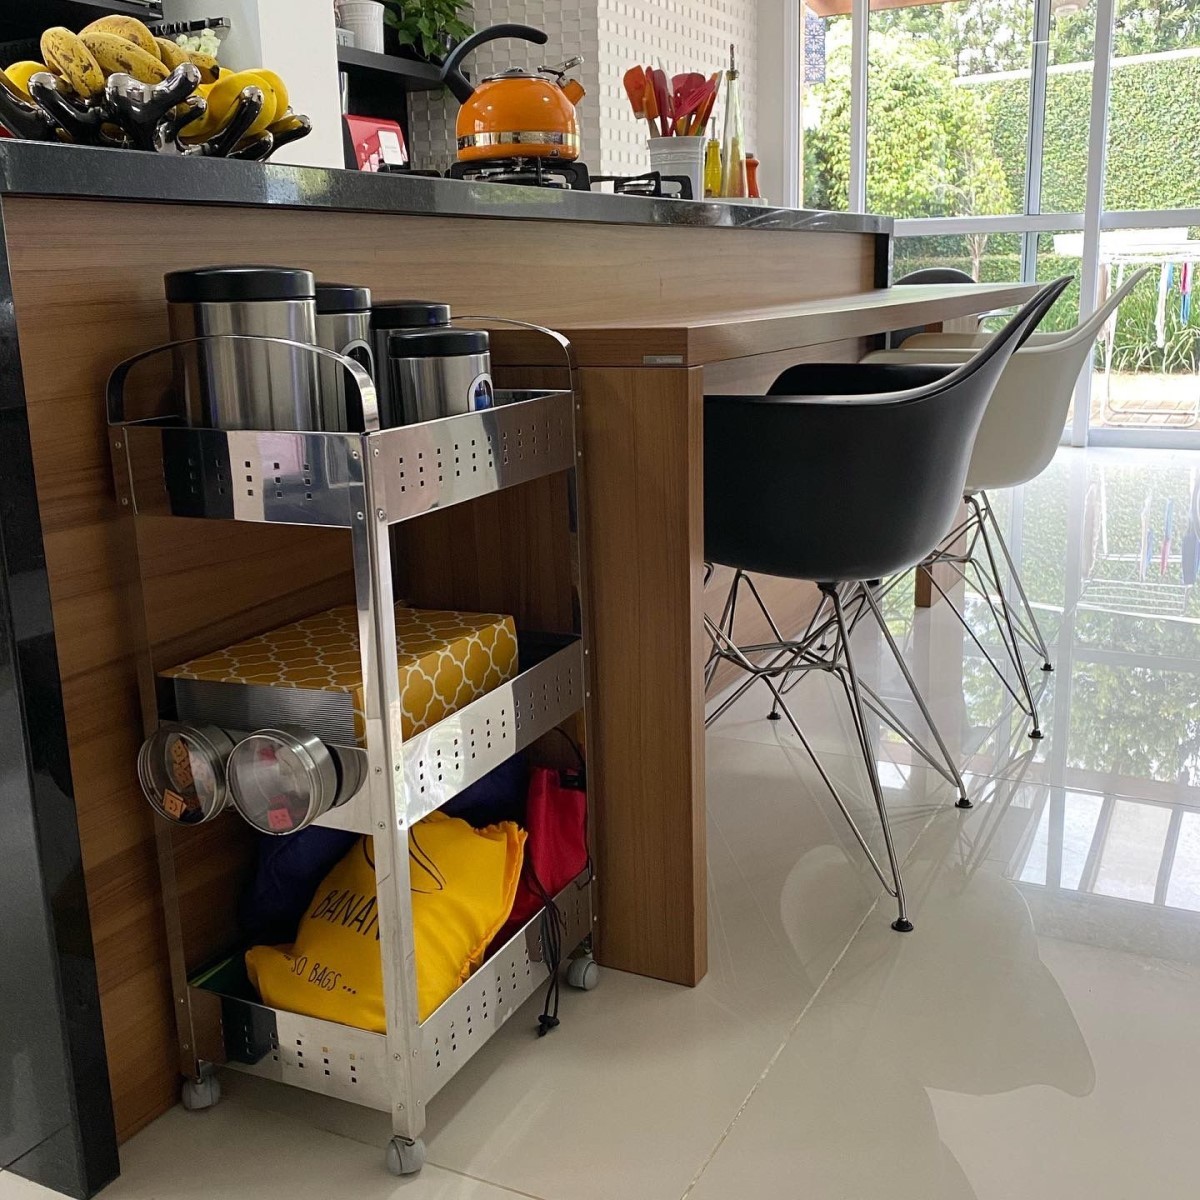 Embora muitos acreditem que as caixas organizadoras são ideais apenas para escritórios, elas são extremamente úteis na cozinha (Foto: Arquivo pessoal / Rafa Oliveira)